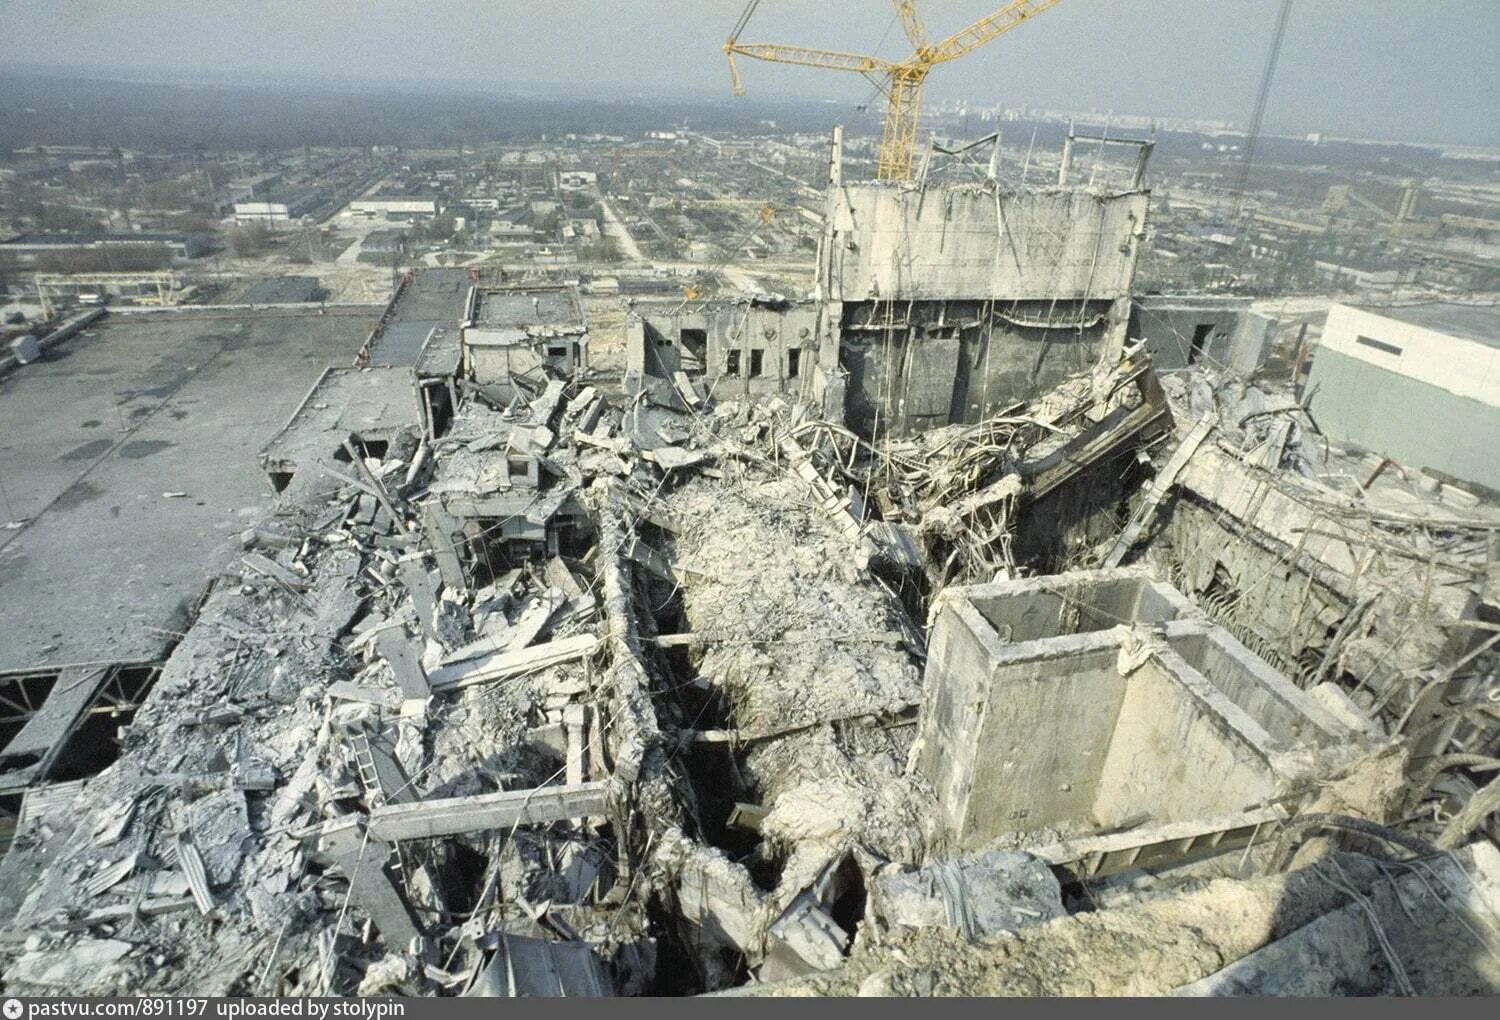 Что будет 26 апреля. 4 Энергоблок Чернобыльской АЭС 1986. 4 Энергоблок ЧАЭС 1986 года 26 апреля. Припять ЧАЭС 1986. Разрушенный 4 энергоблок ЧАЭС.